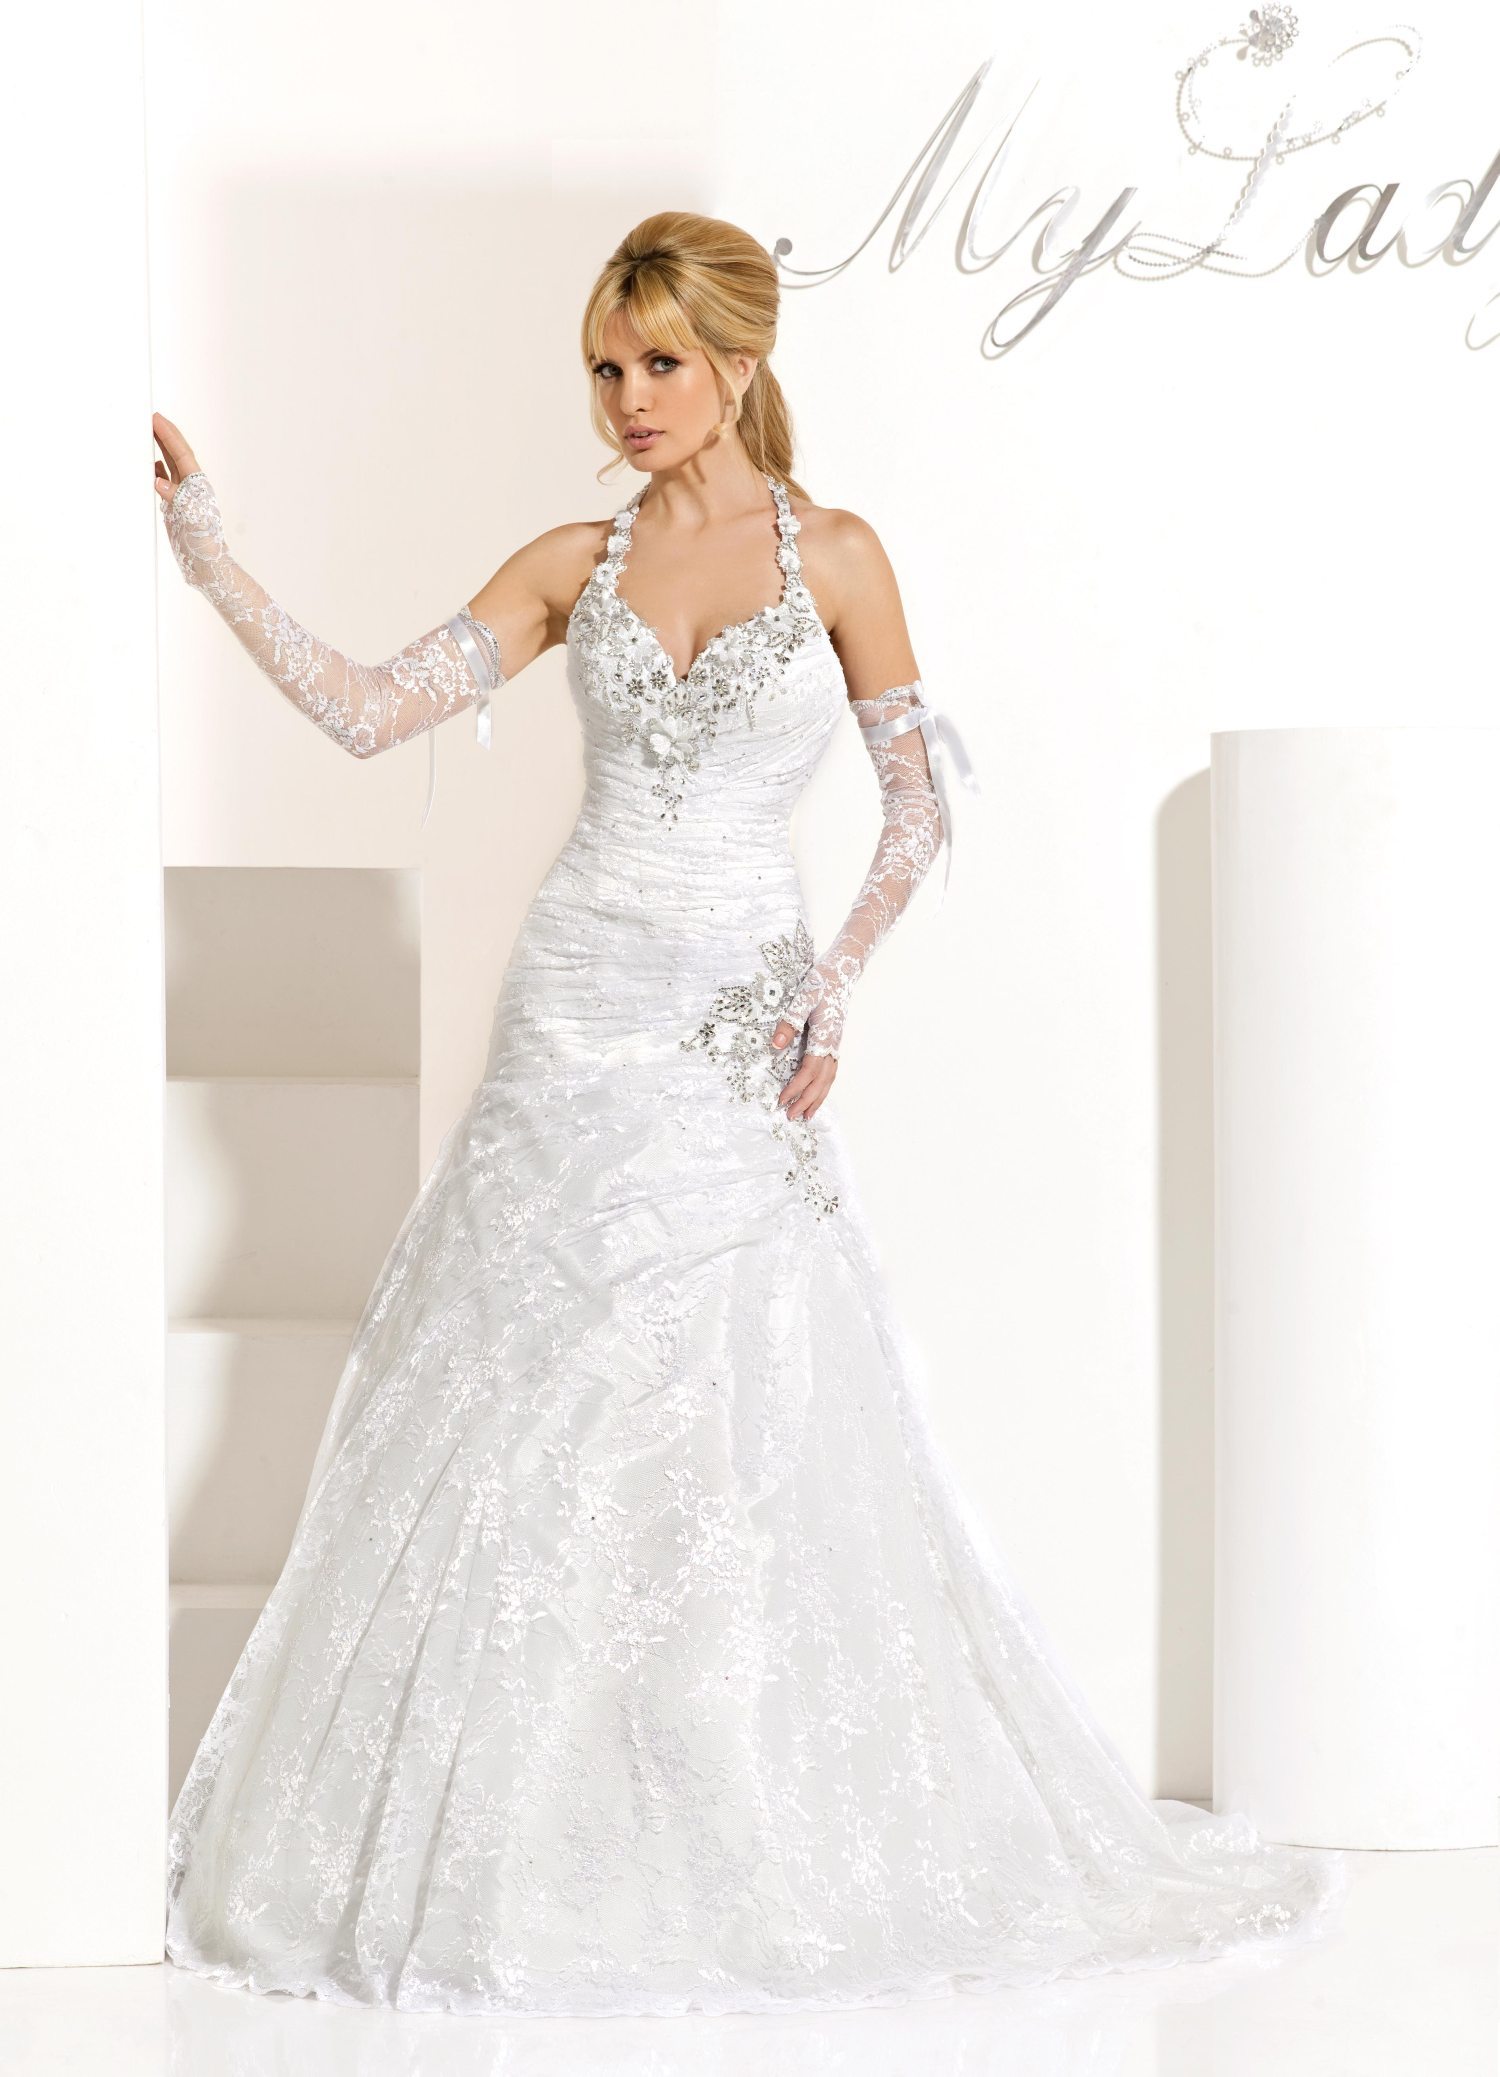 Wedding Dress - Lady Daliana Dress | MyLady Bridal Gown